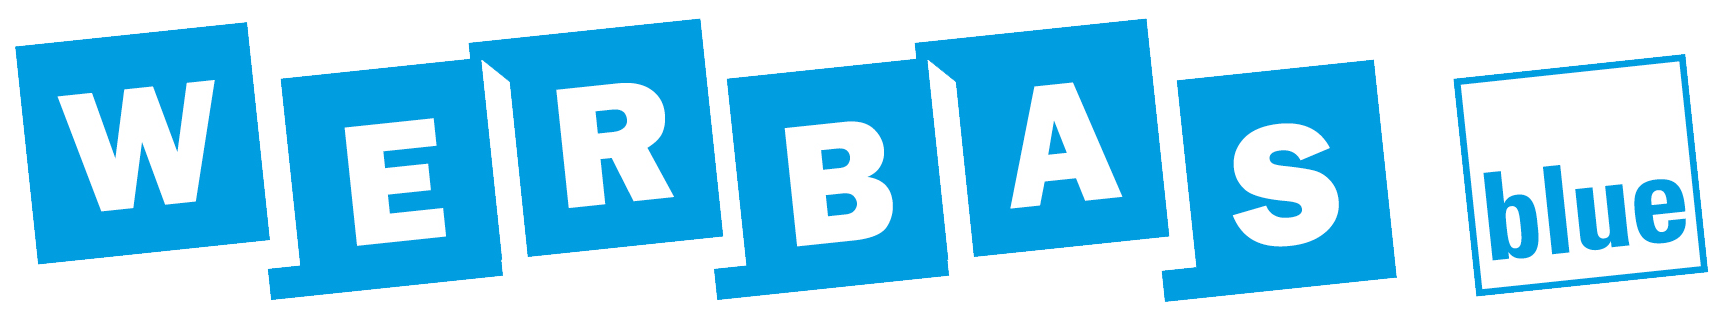 Bild: WERBAS.Blue Logo